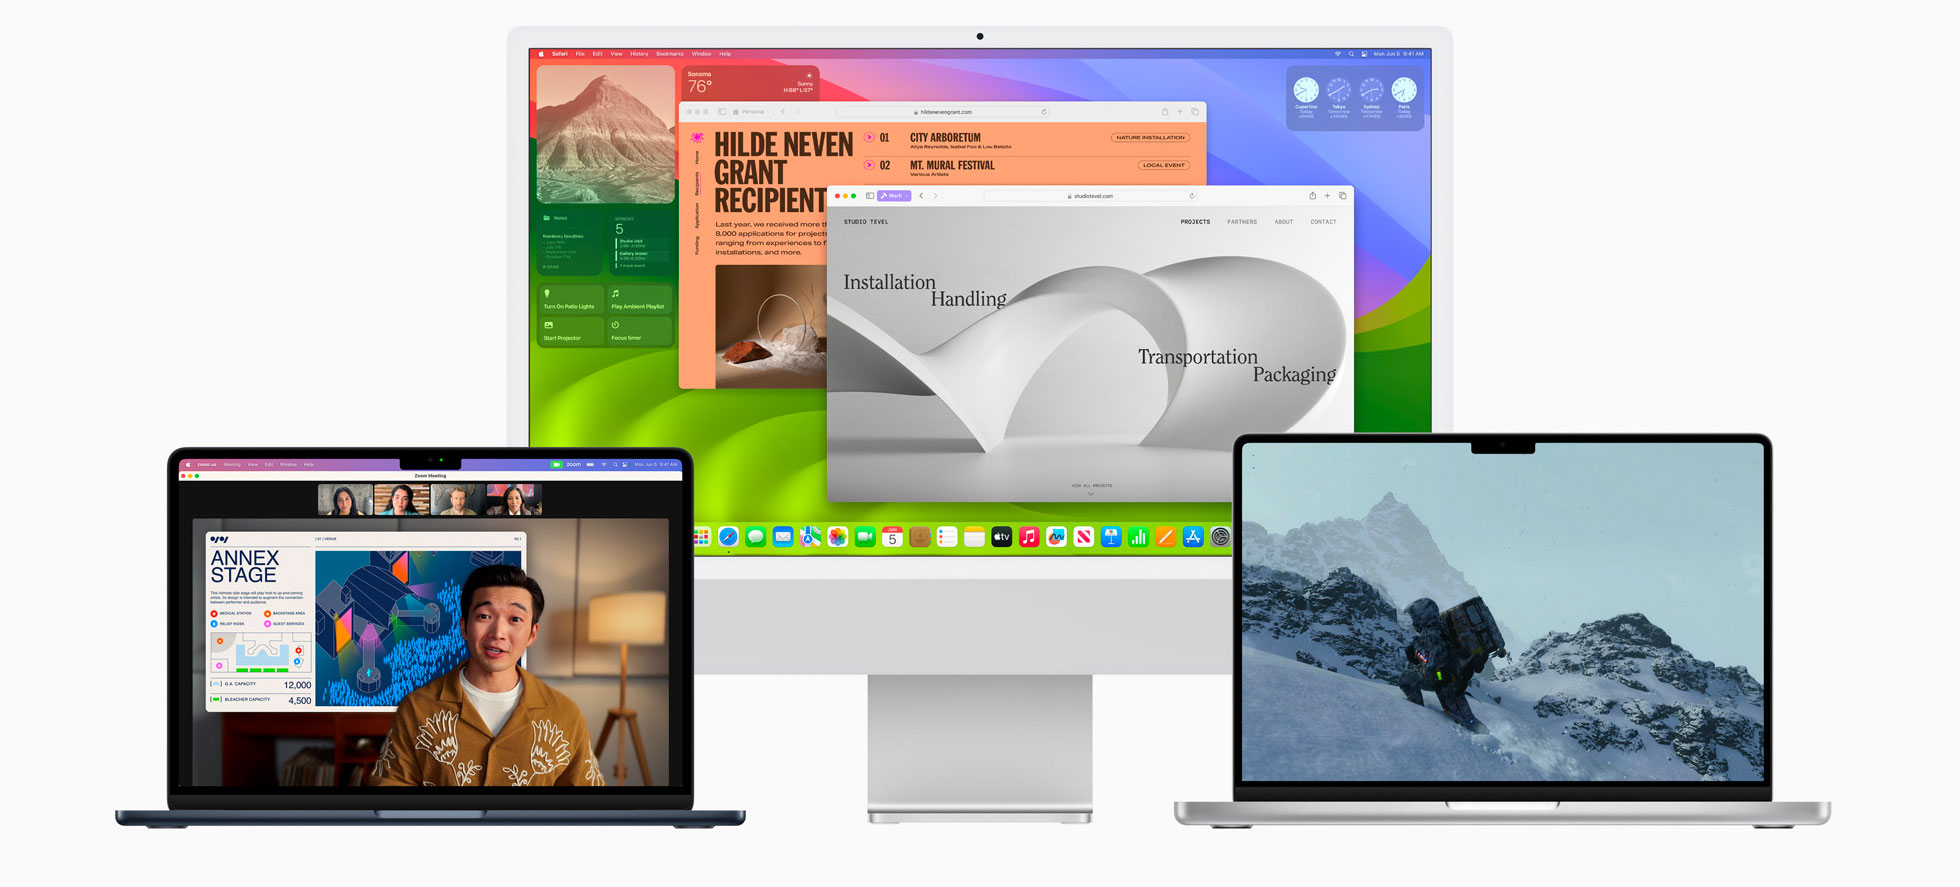 macOS Sonoma, Apple restringe l'elenco dei Mac compatibili